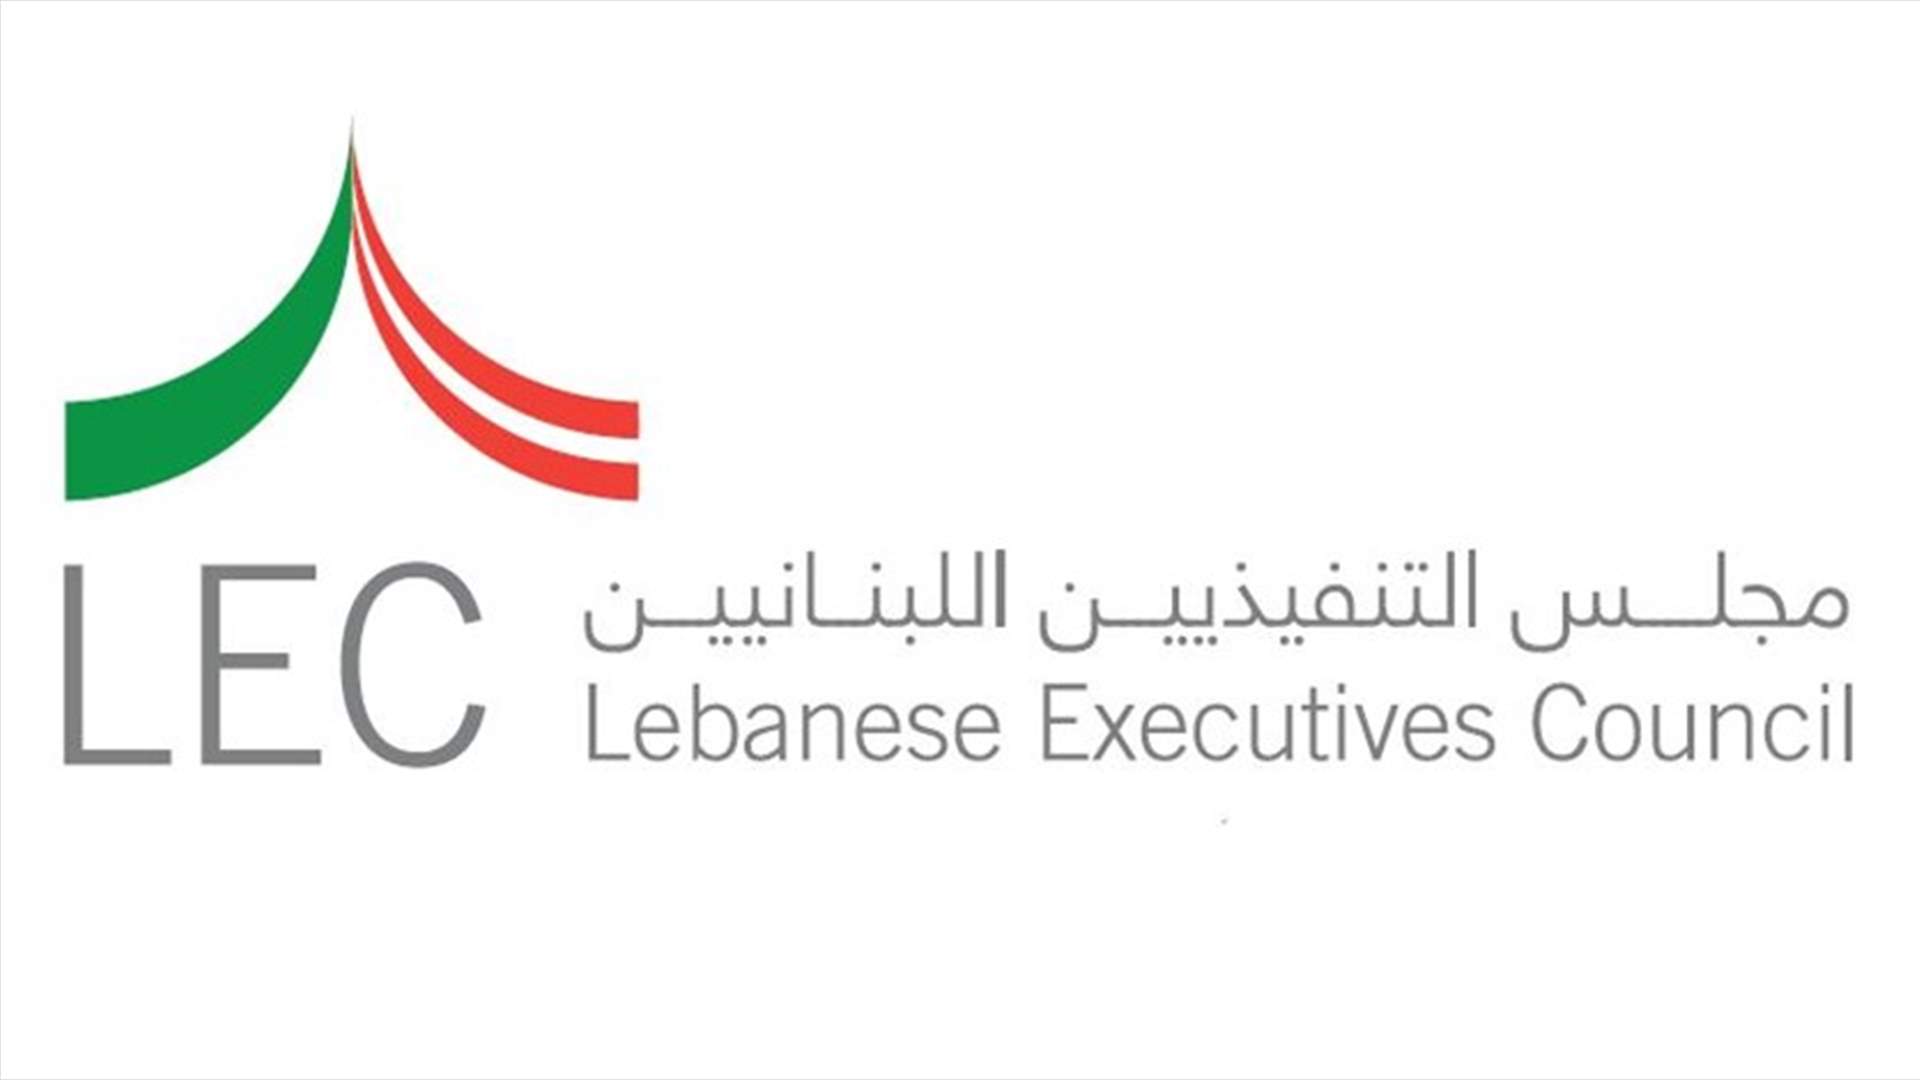 مجلس التنفيذيين اللبنانيين يطالب بكف يد وهبة عن وزارة الخارجية